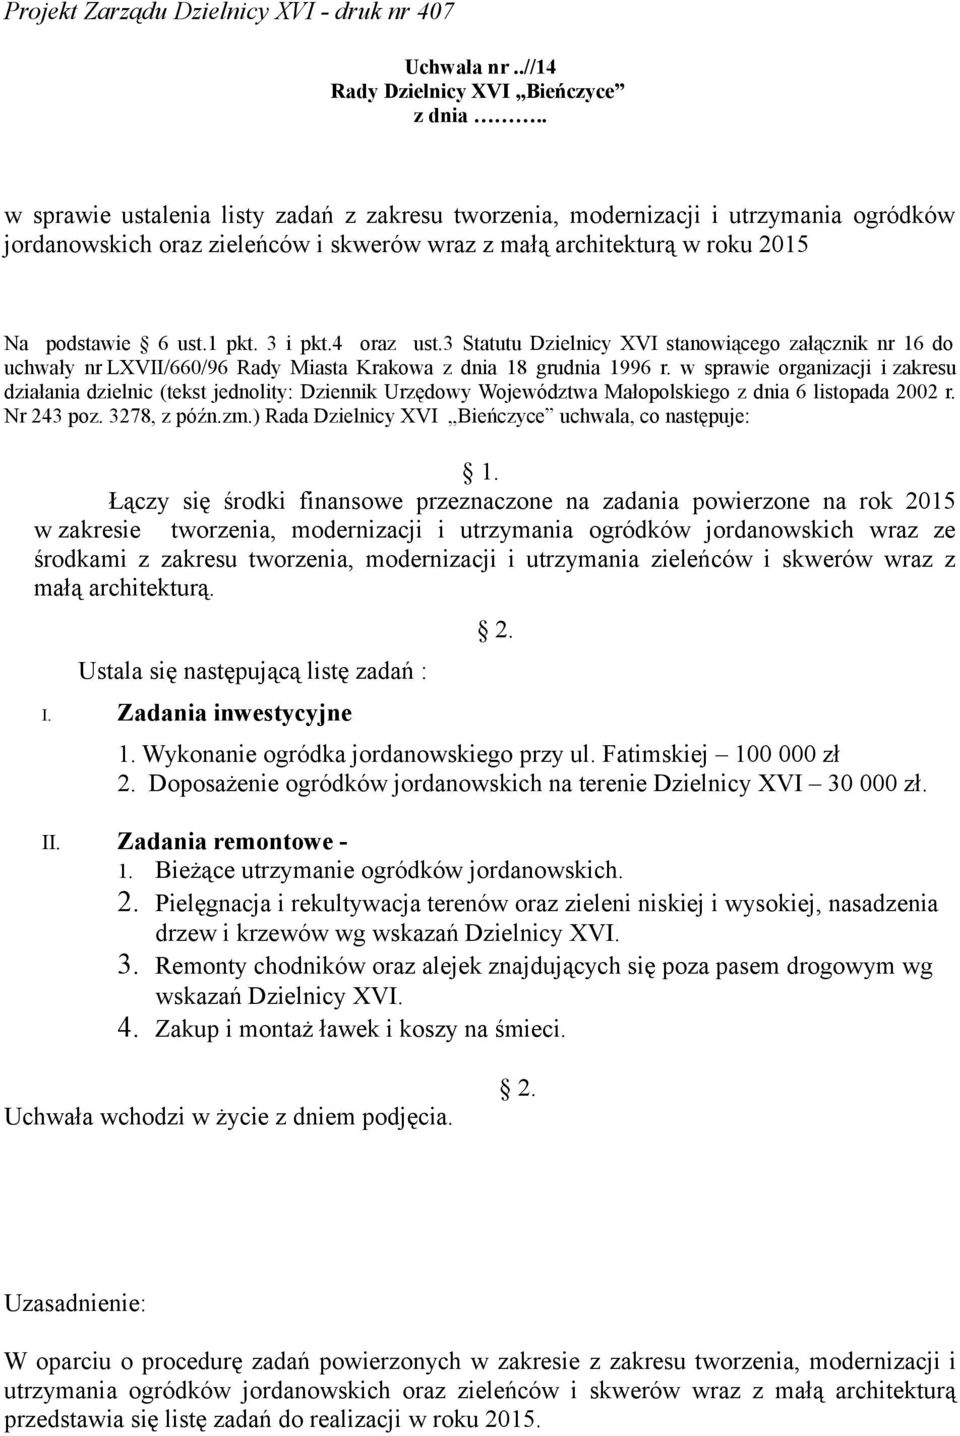 w sprawie organizacji i zakresu działania dzielnic (tekst jednolity: Dziennik Urzędowy Województwa Małopolskiego z dnia 6 listopada 2002 r. Nr 243 poz. 3278, z późn.zm.